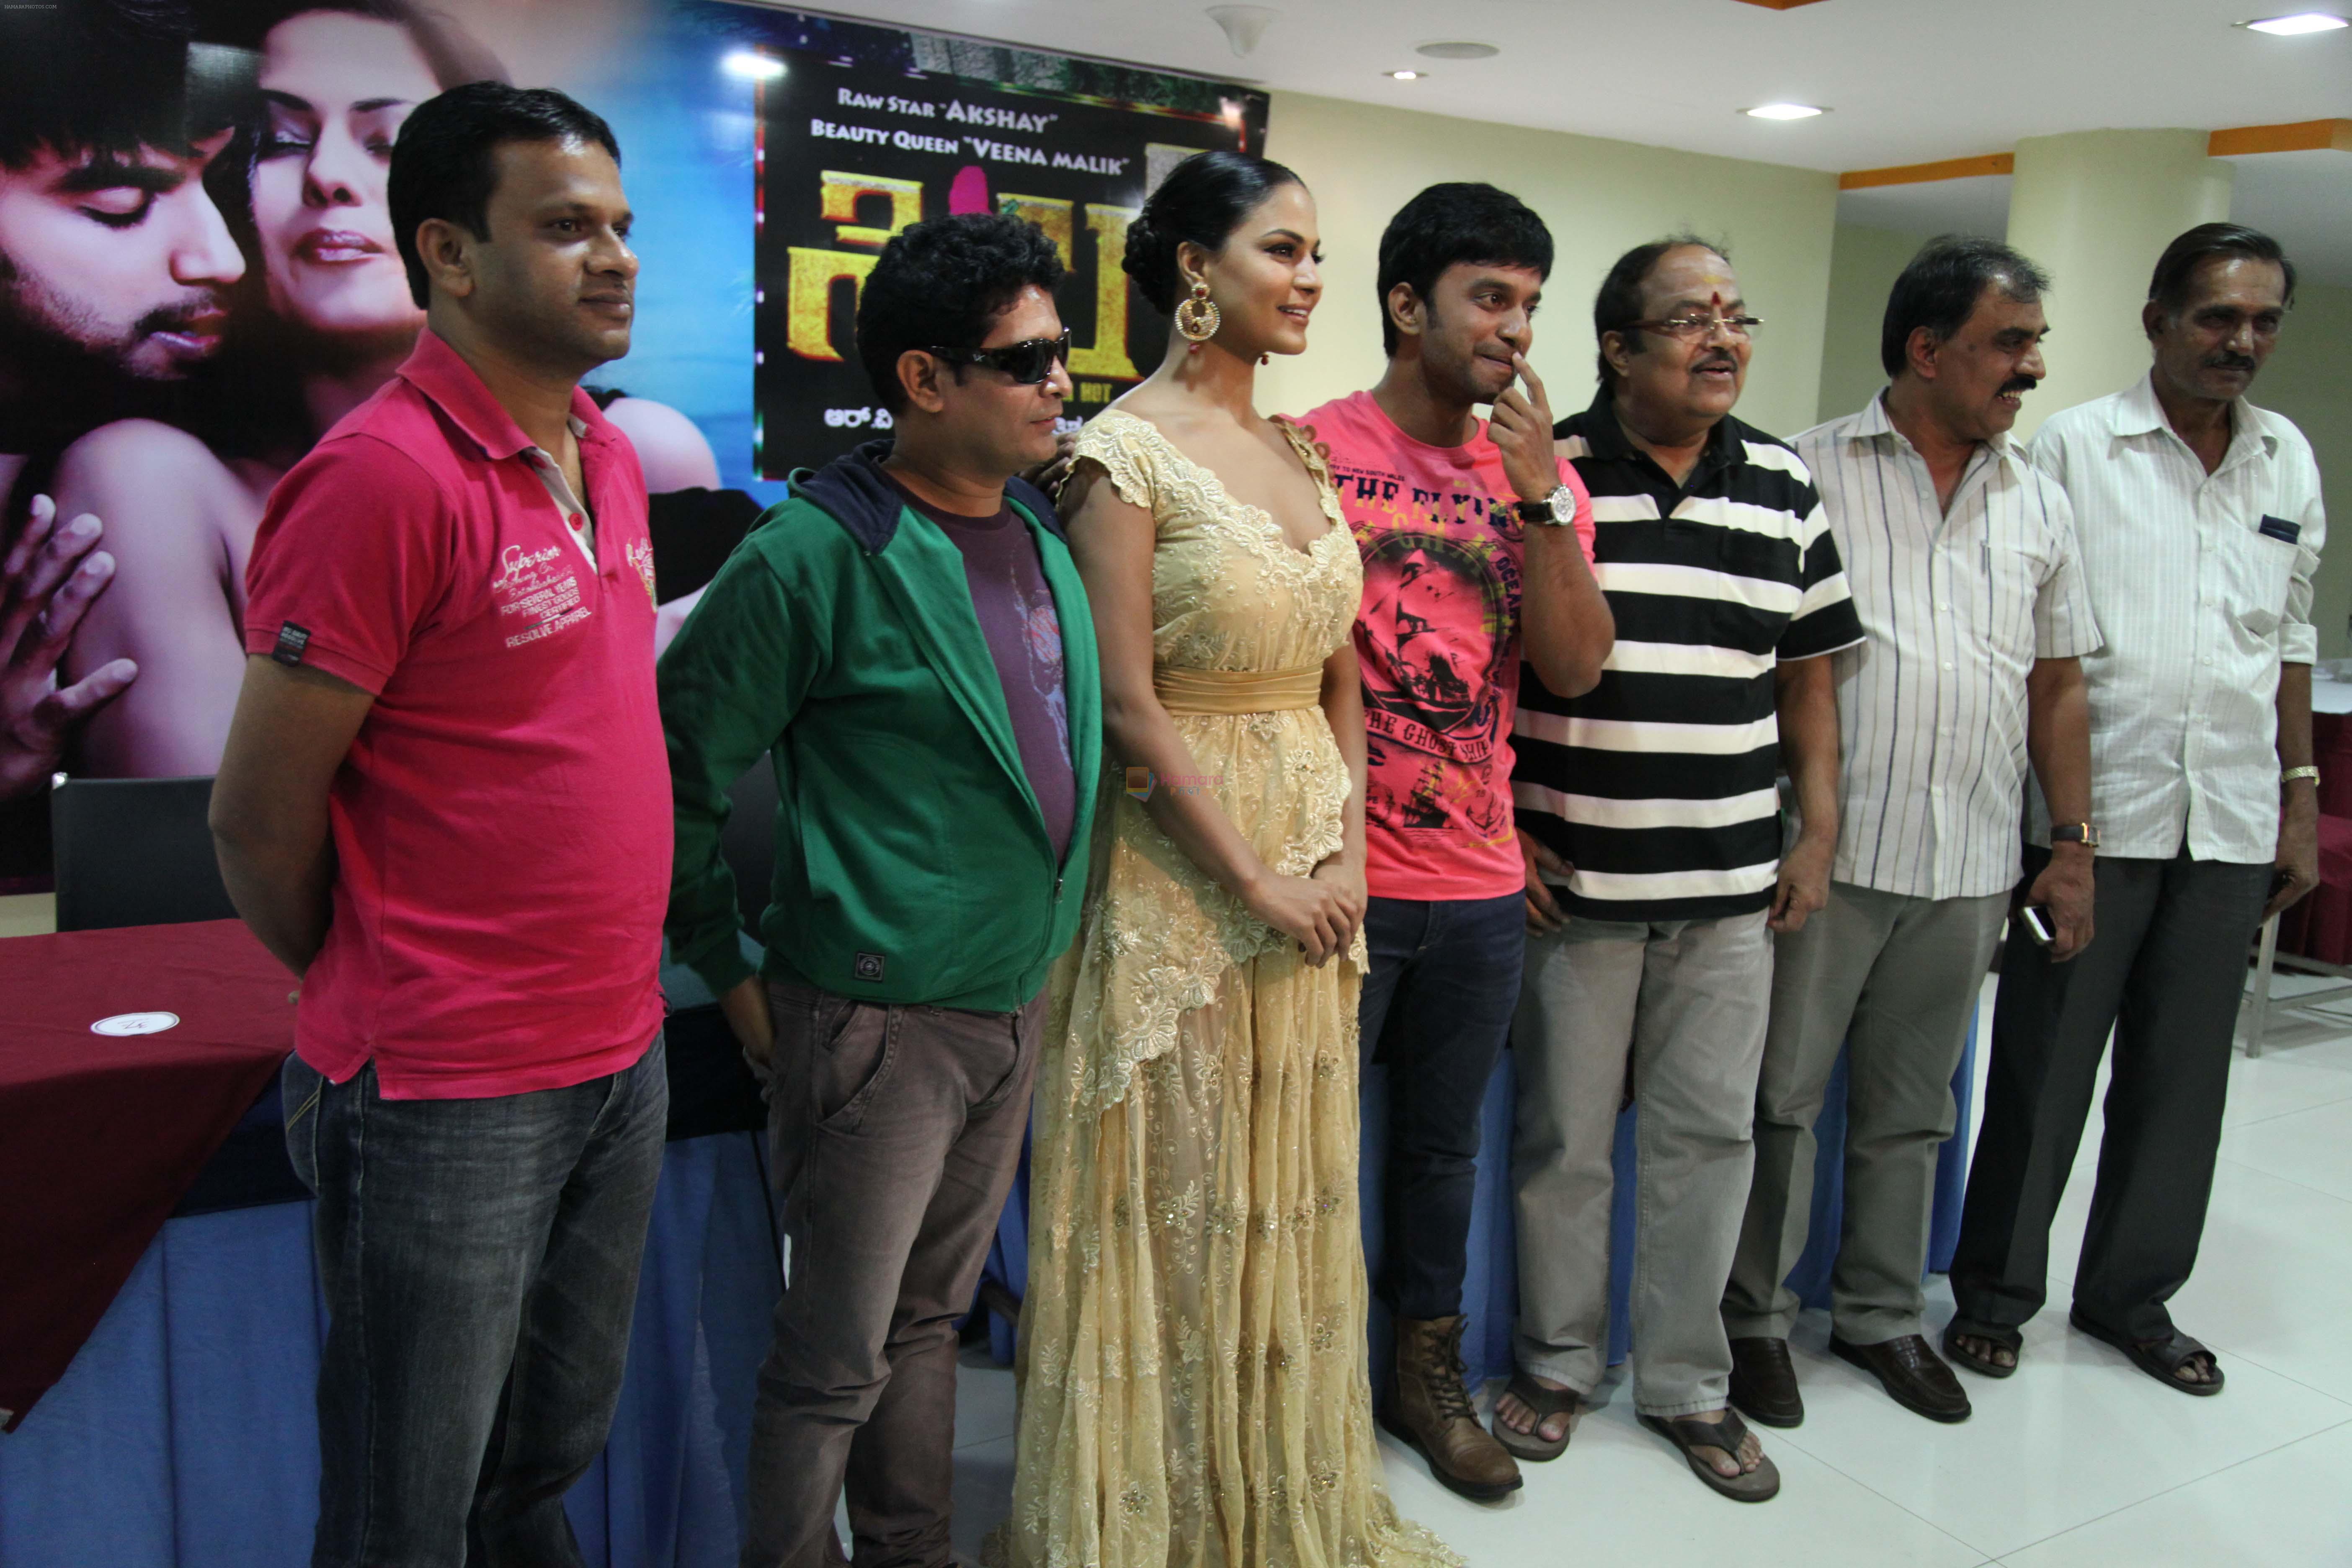 Veena Malik Silk Sakkath Hot Maga release on August 2 on 30th July 2013